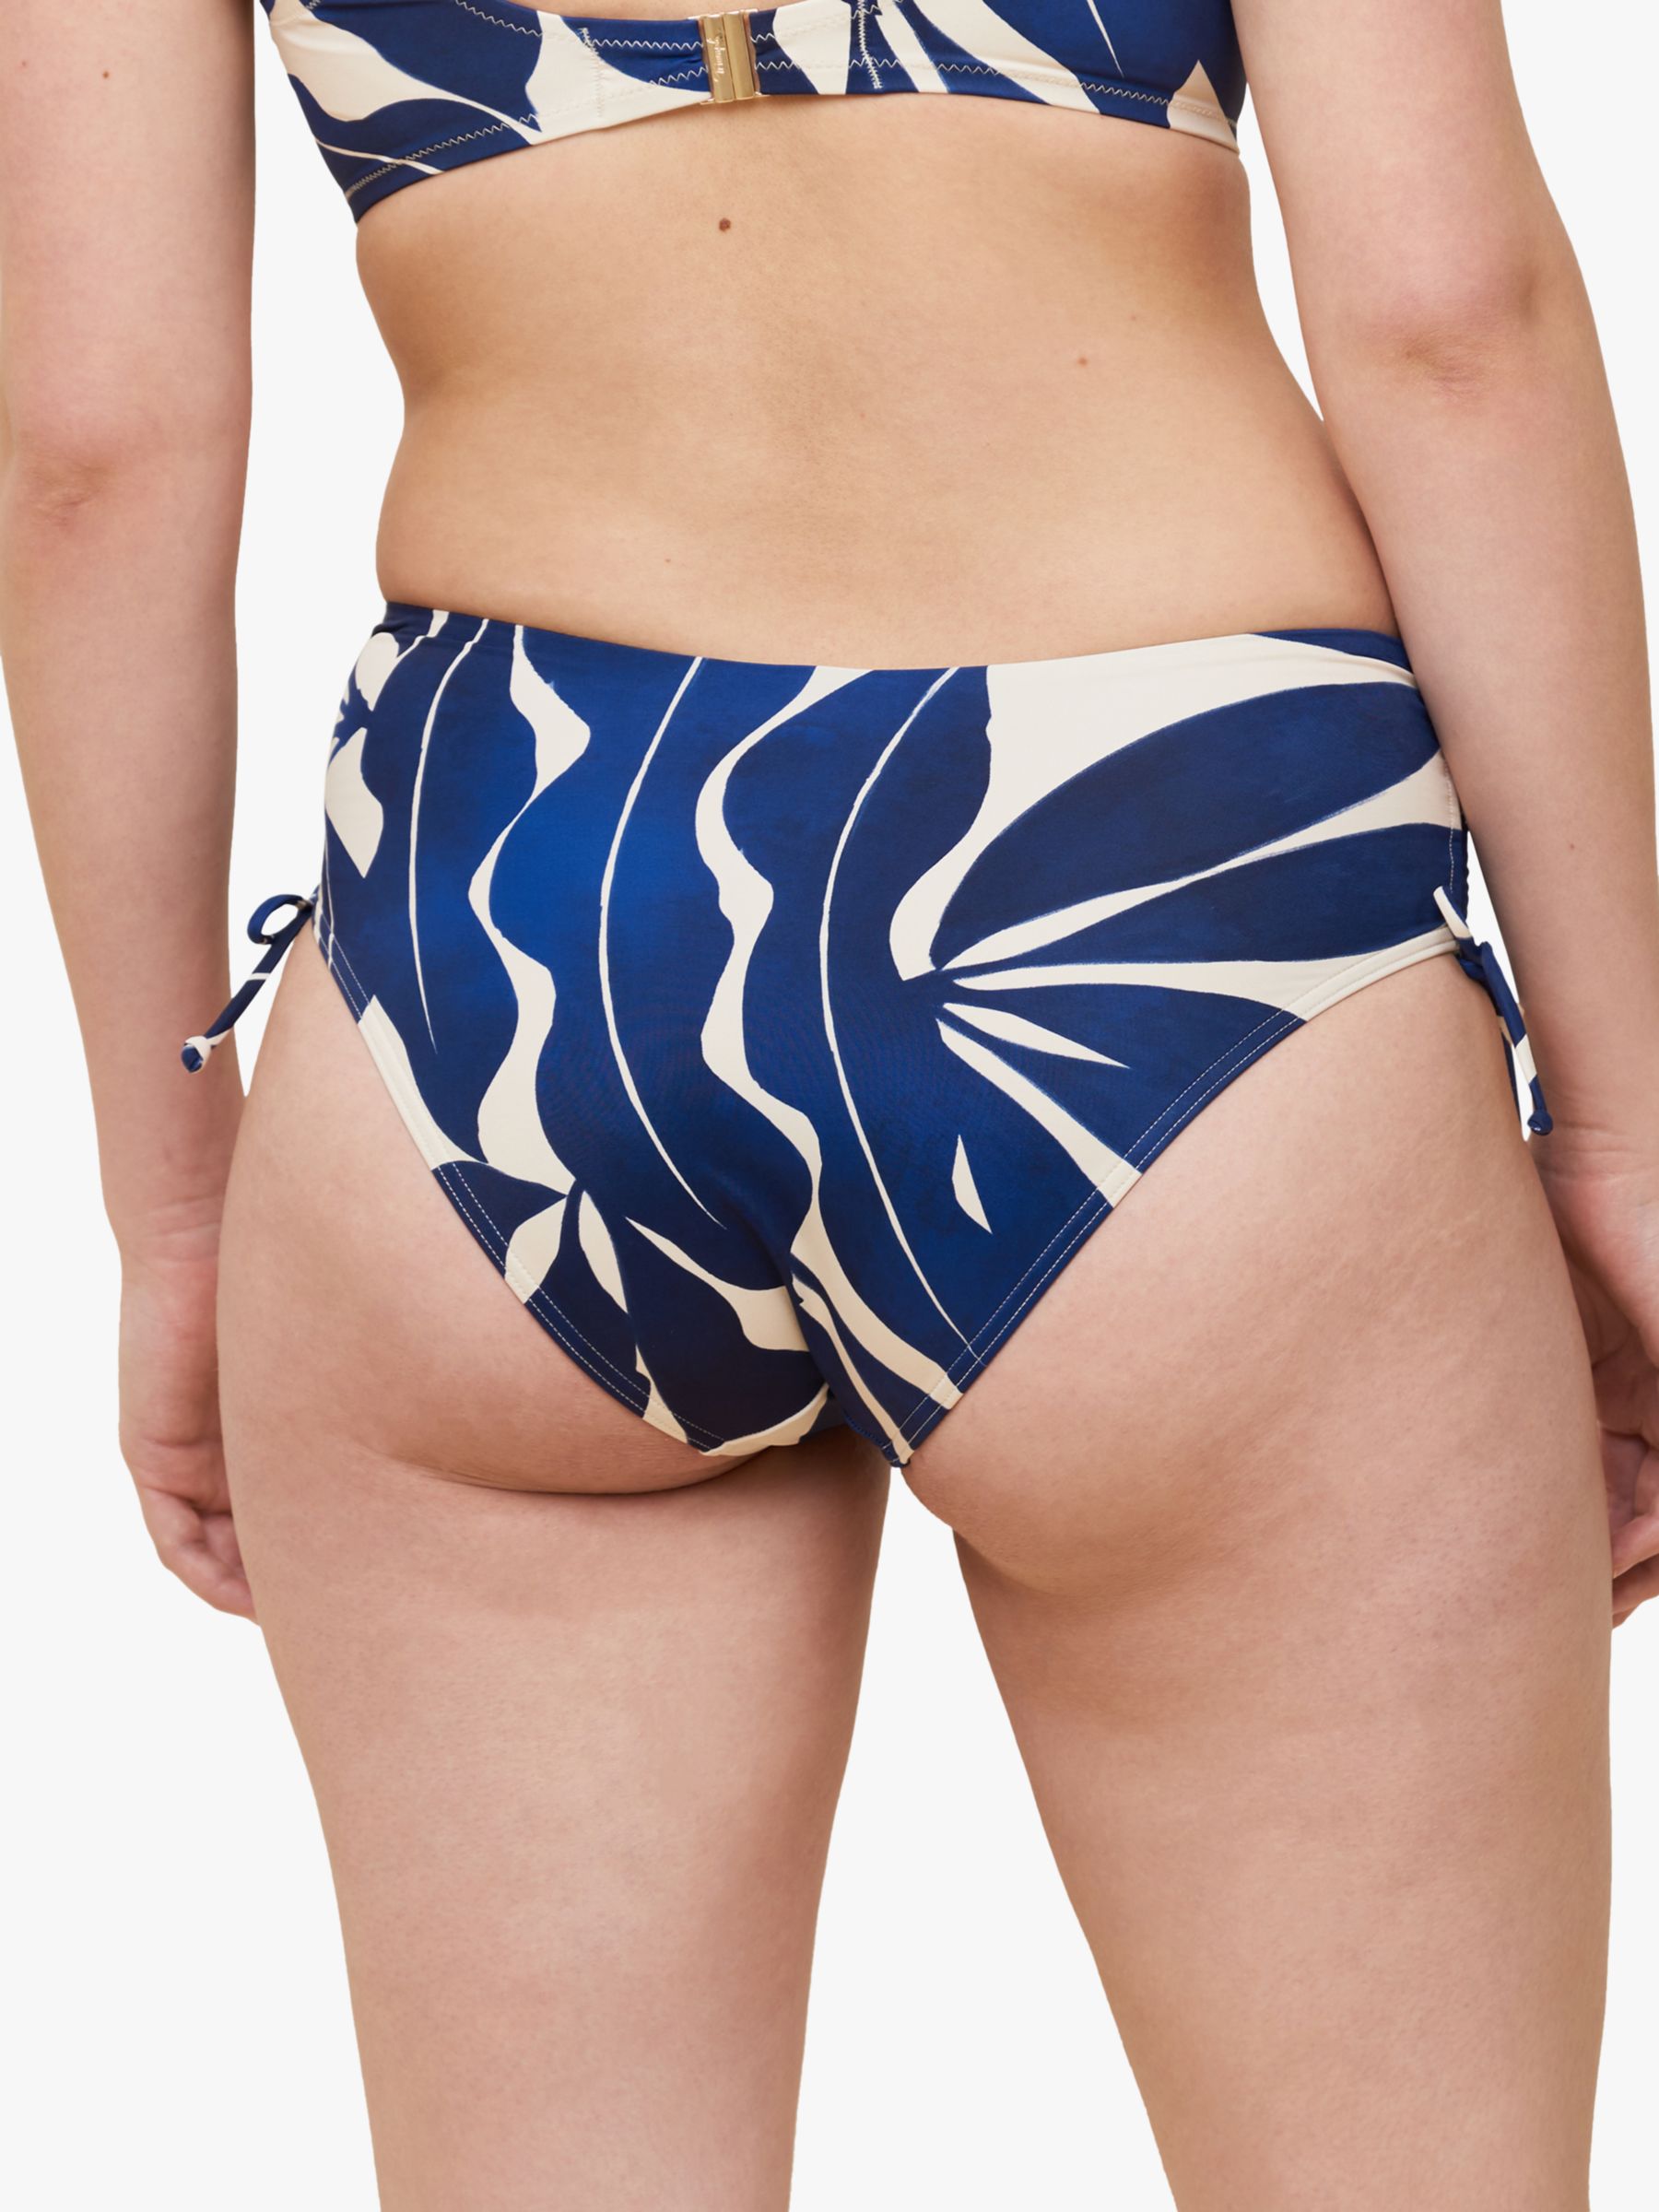 Triumph Summer Allure Maxi Bikini Bottoms, Blue, 10